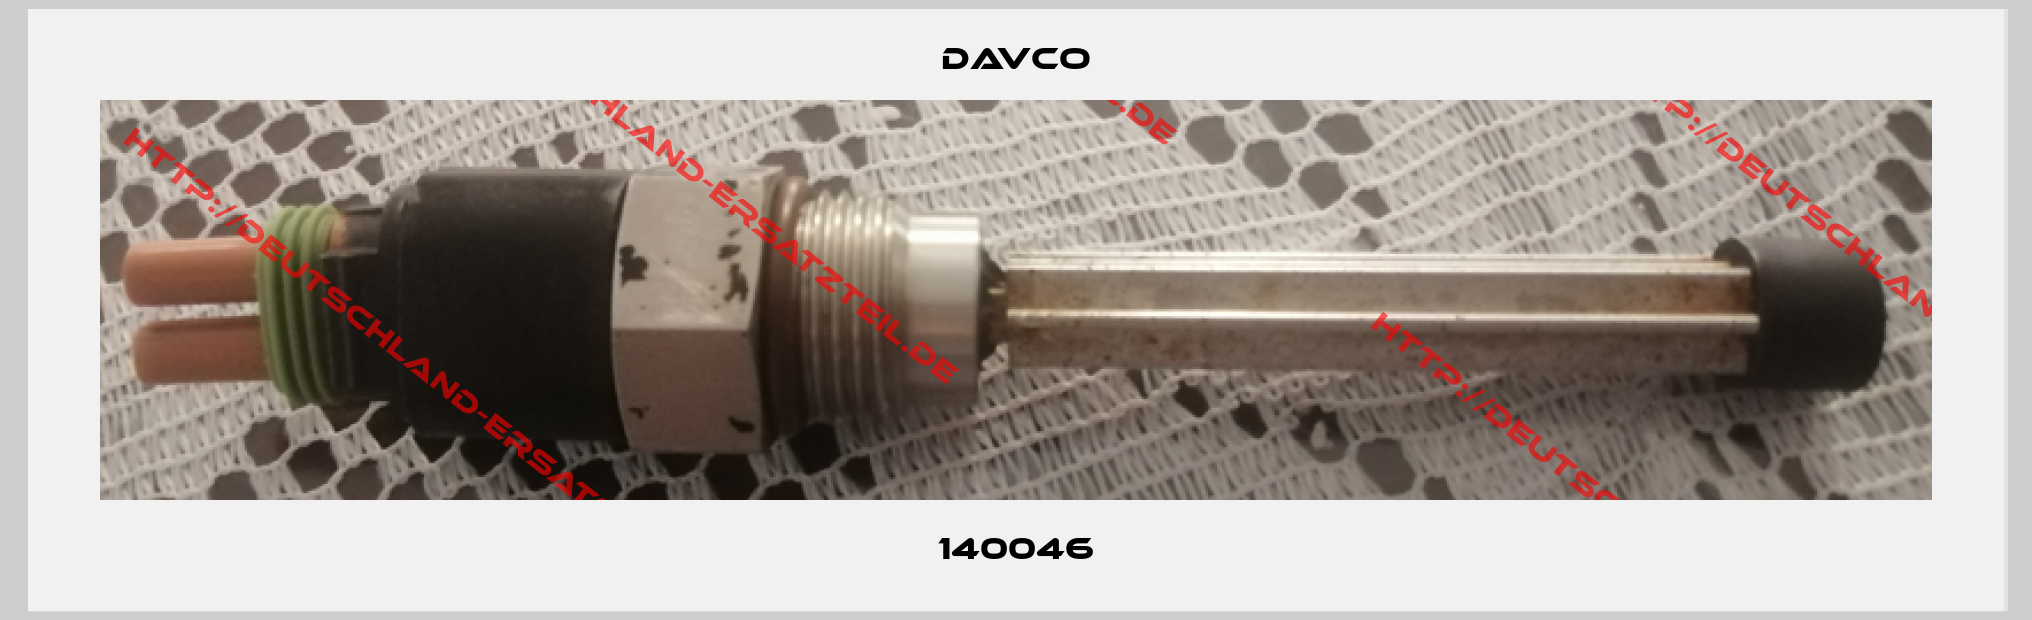 DAVCO-140046